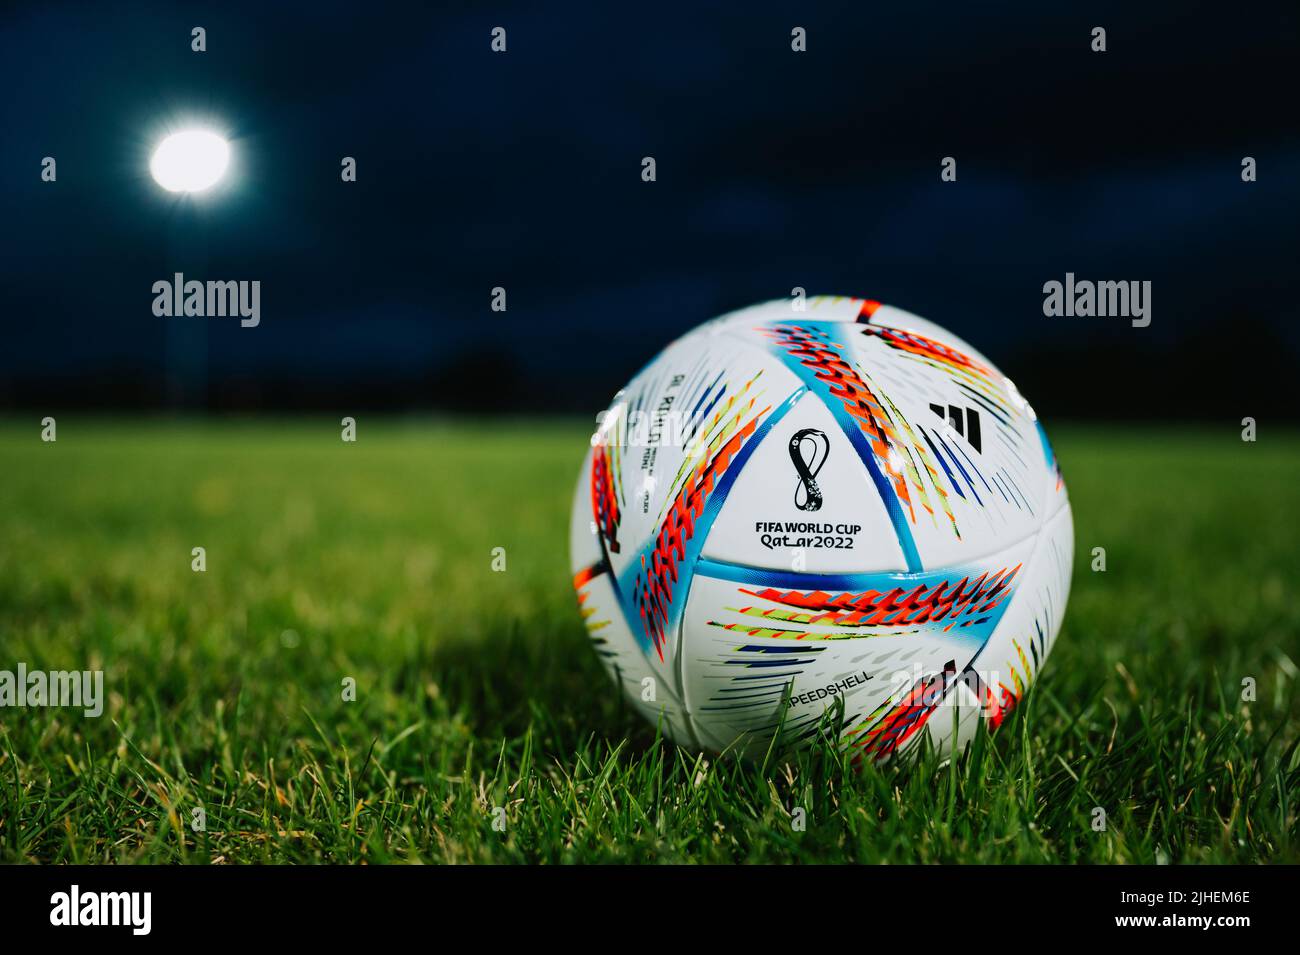 Adidas official match ball -Fotos und -Bildmaterial in hoher Auflösung -  Seite 3 - Alamy